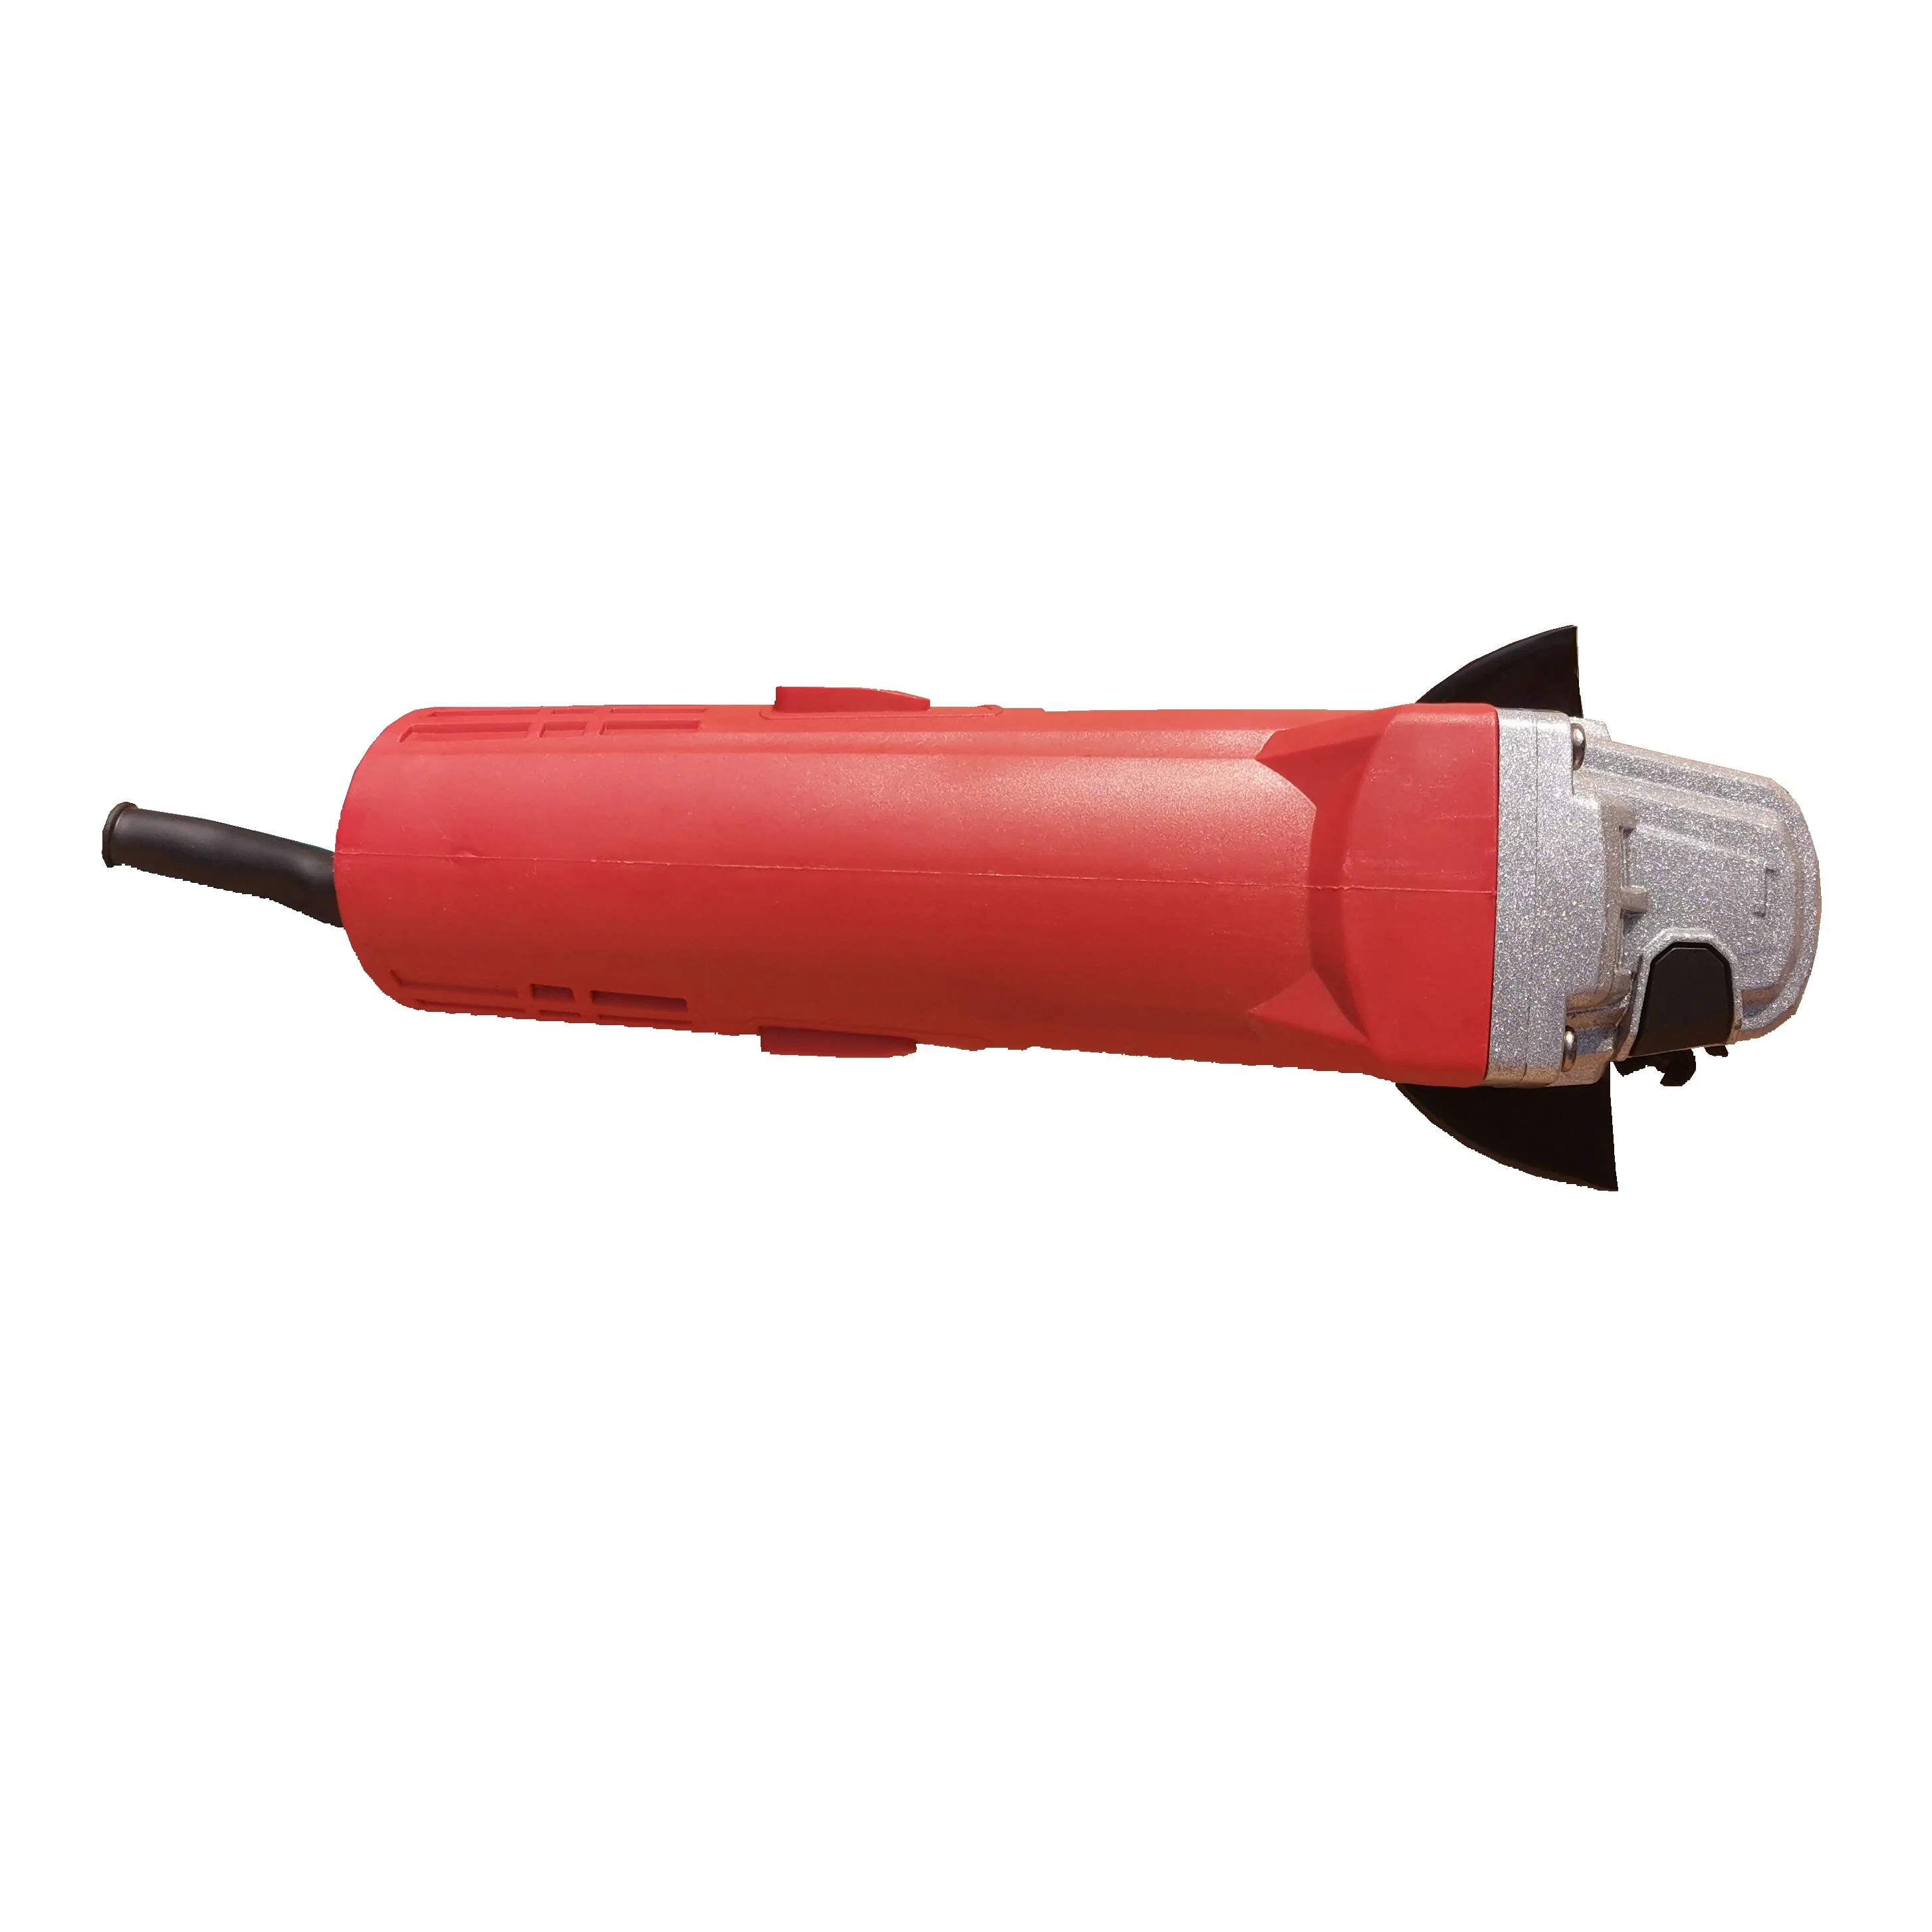 Herramientas eléctricas profesionales suministrado por el fabricante herramienta de corte de mano barata (MK9523)